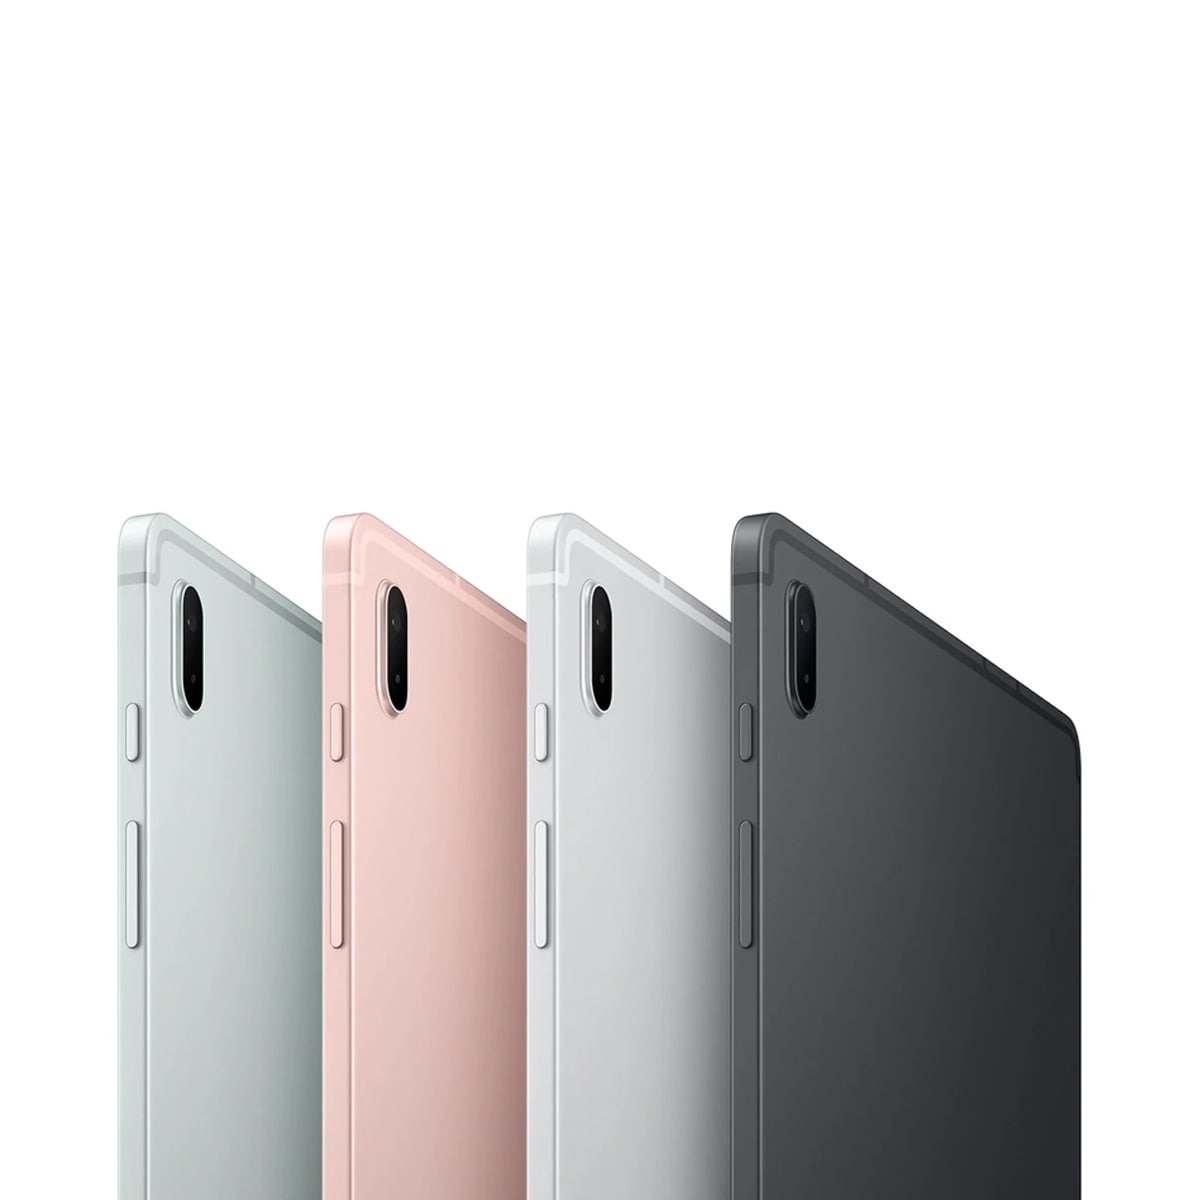 تبلت سامسونگ مدل Galaxy Tab S7 FE T735 به همراه S Pen ظرفیت 64 گیگابایت